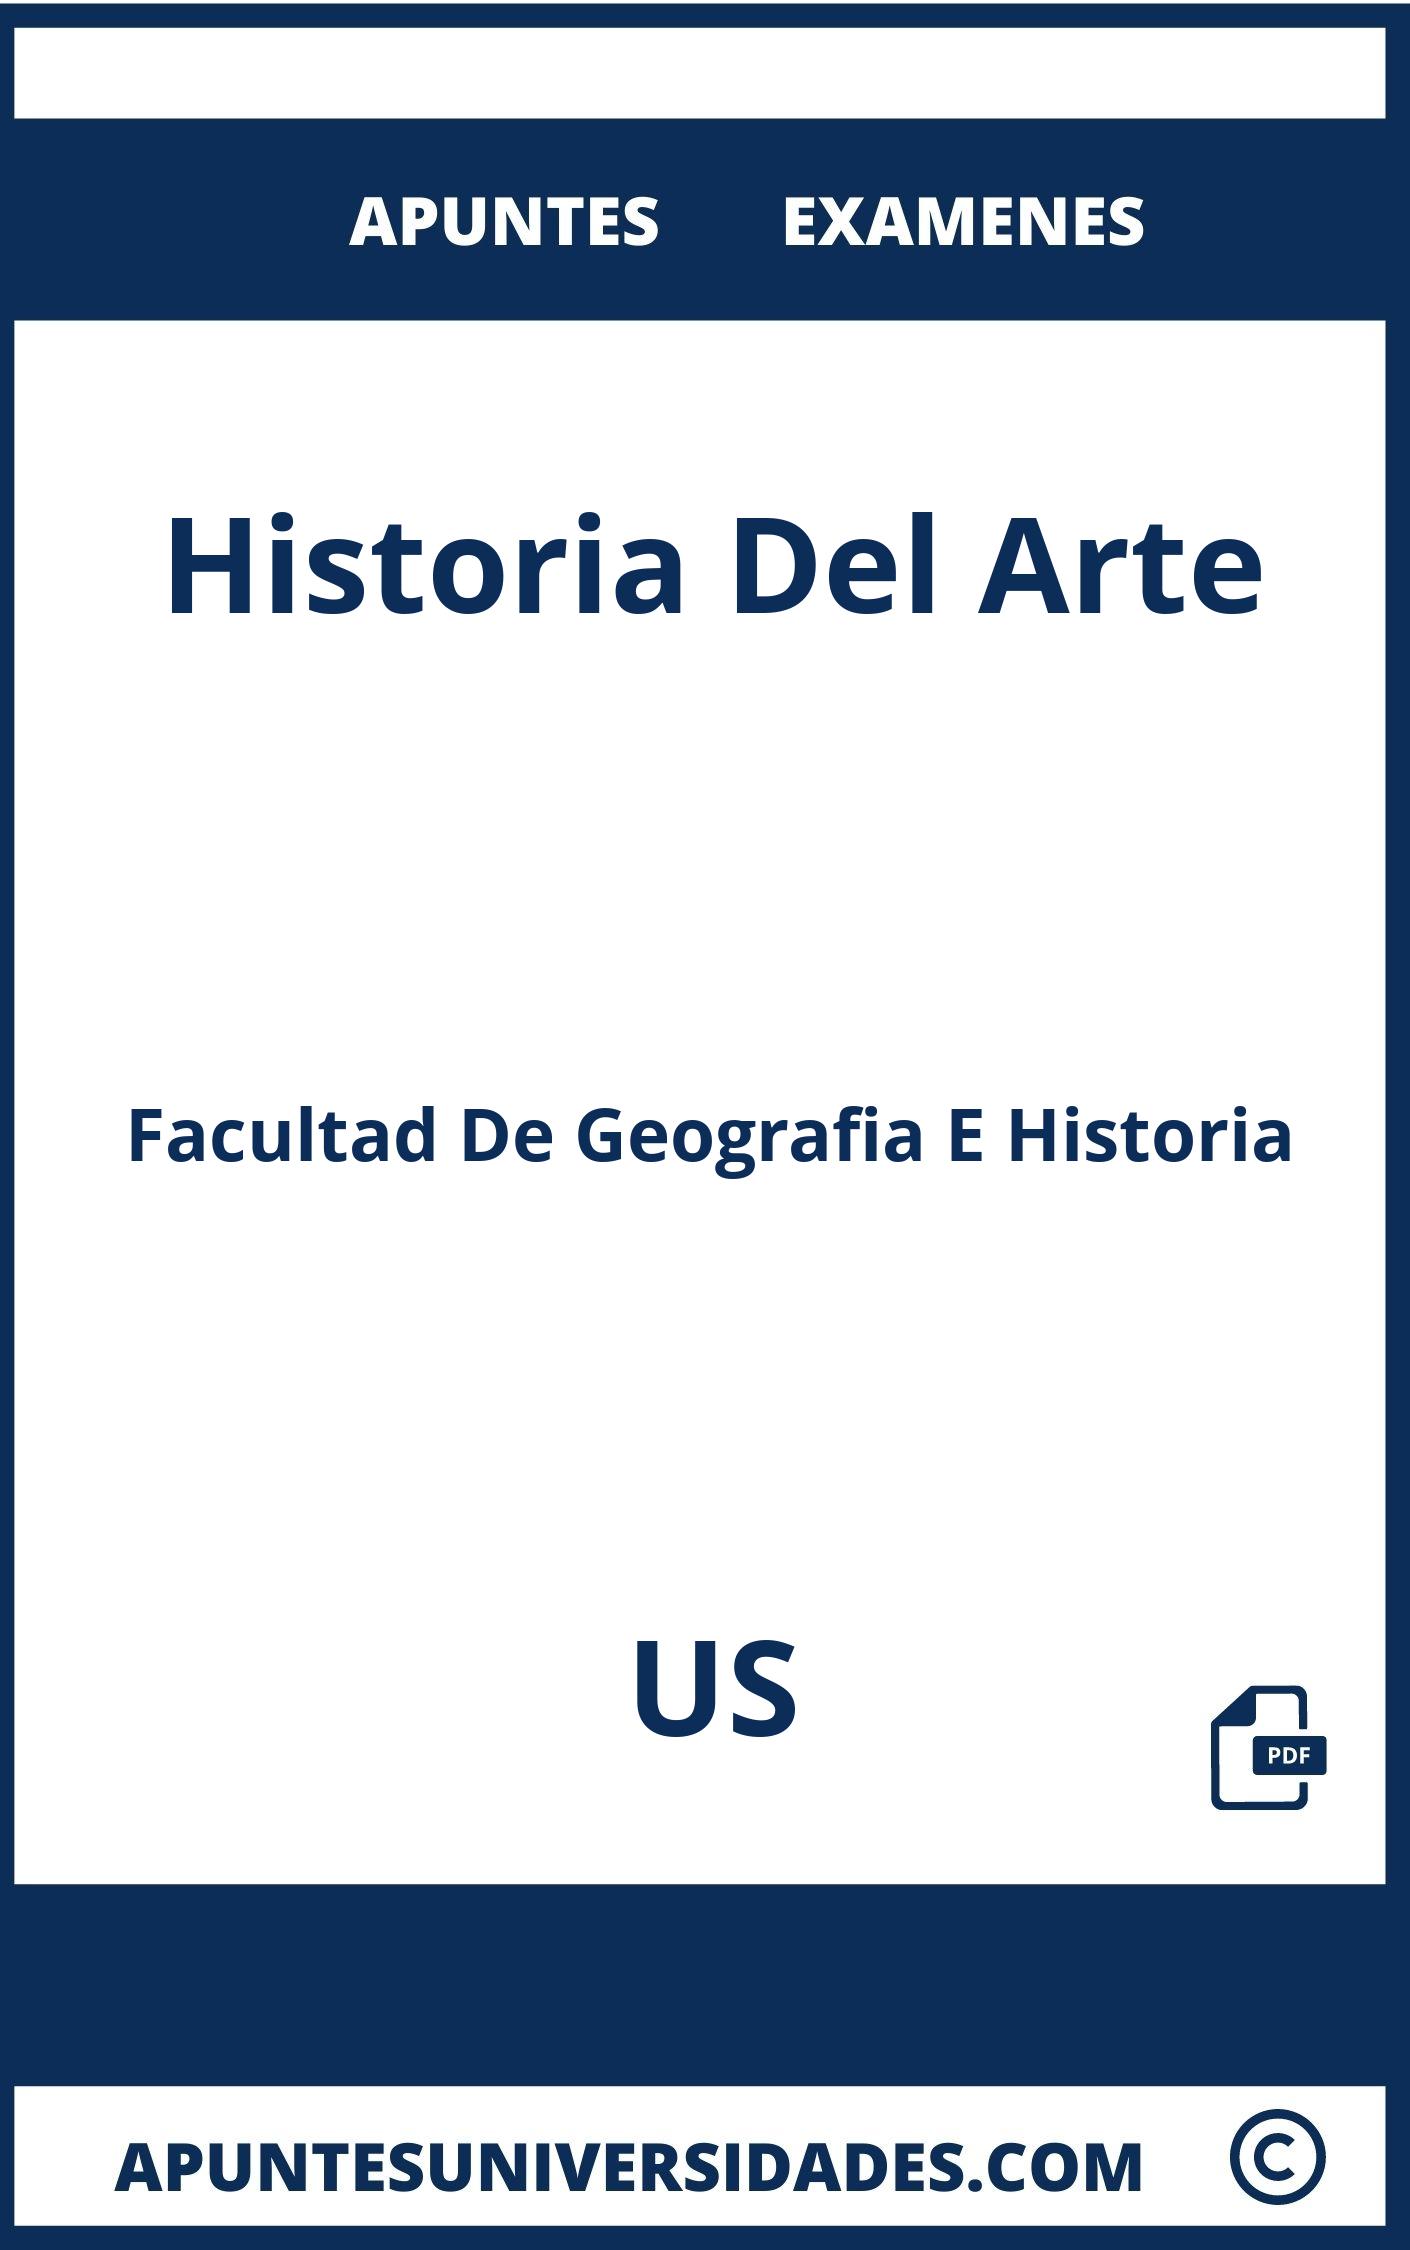 Apuntes y Examenes Historia Del Arte US